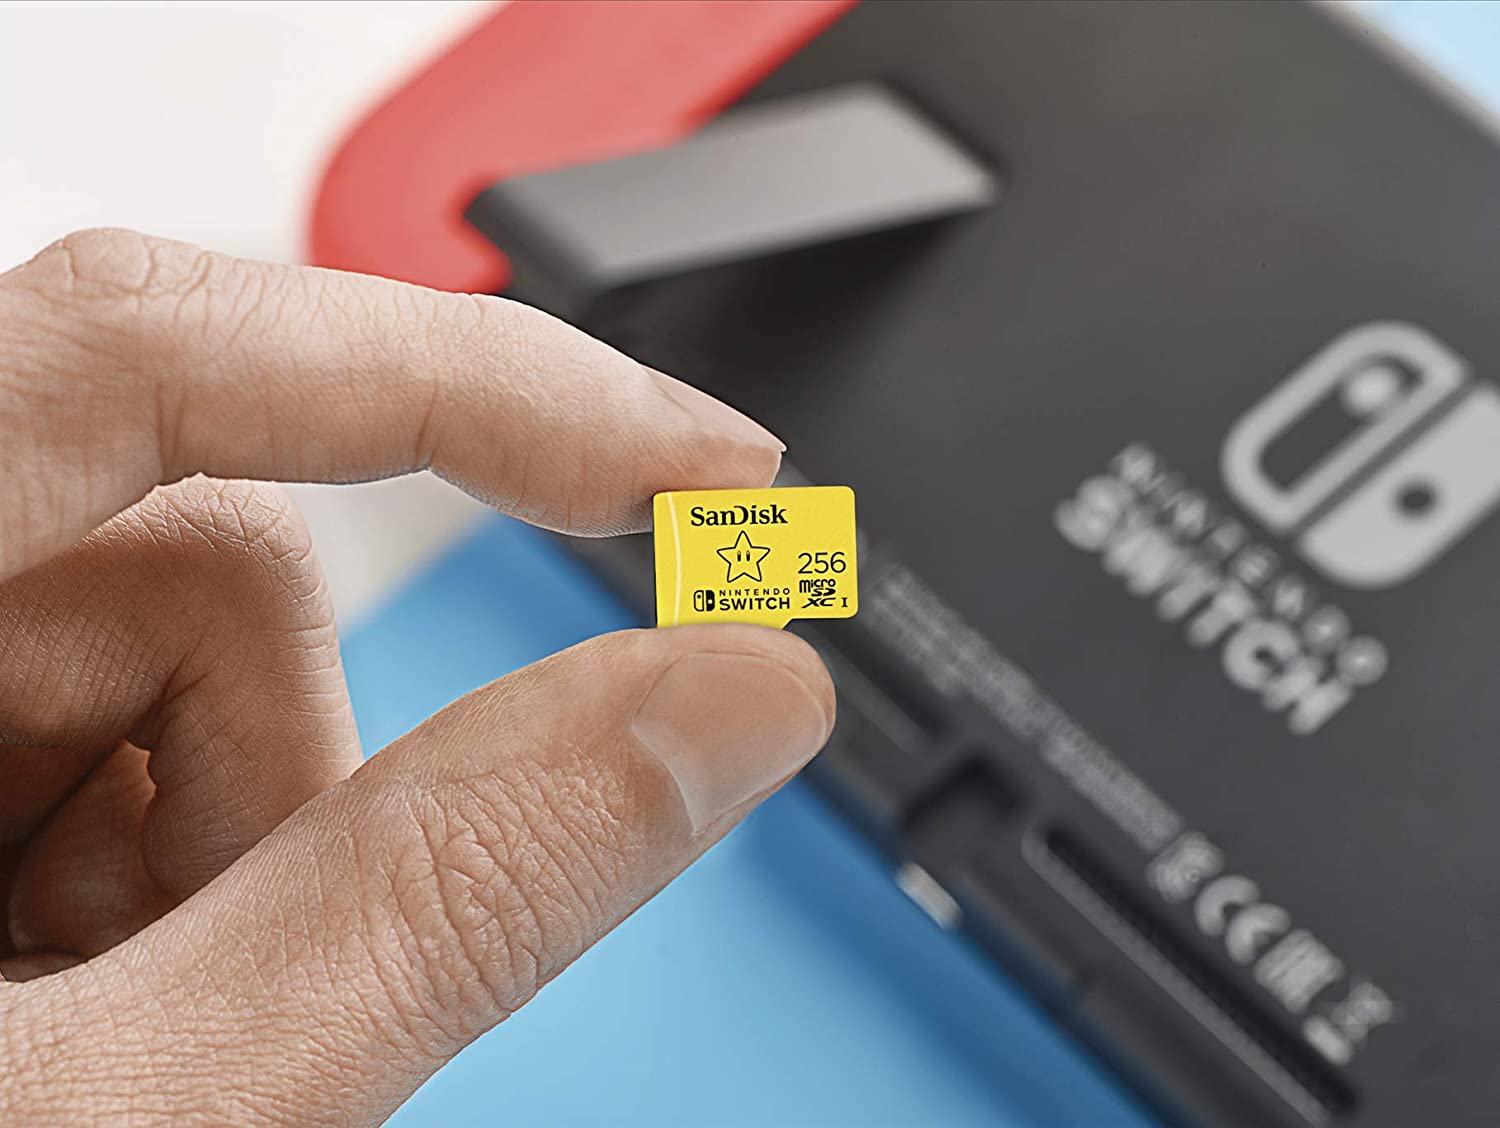 Aprés Zelda et Mario découvrez la carte mémoire micro SDXC 512 Go